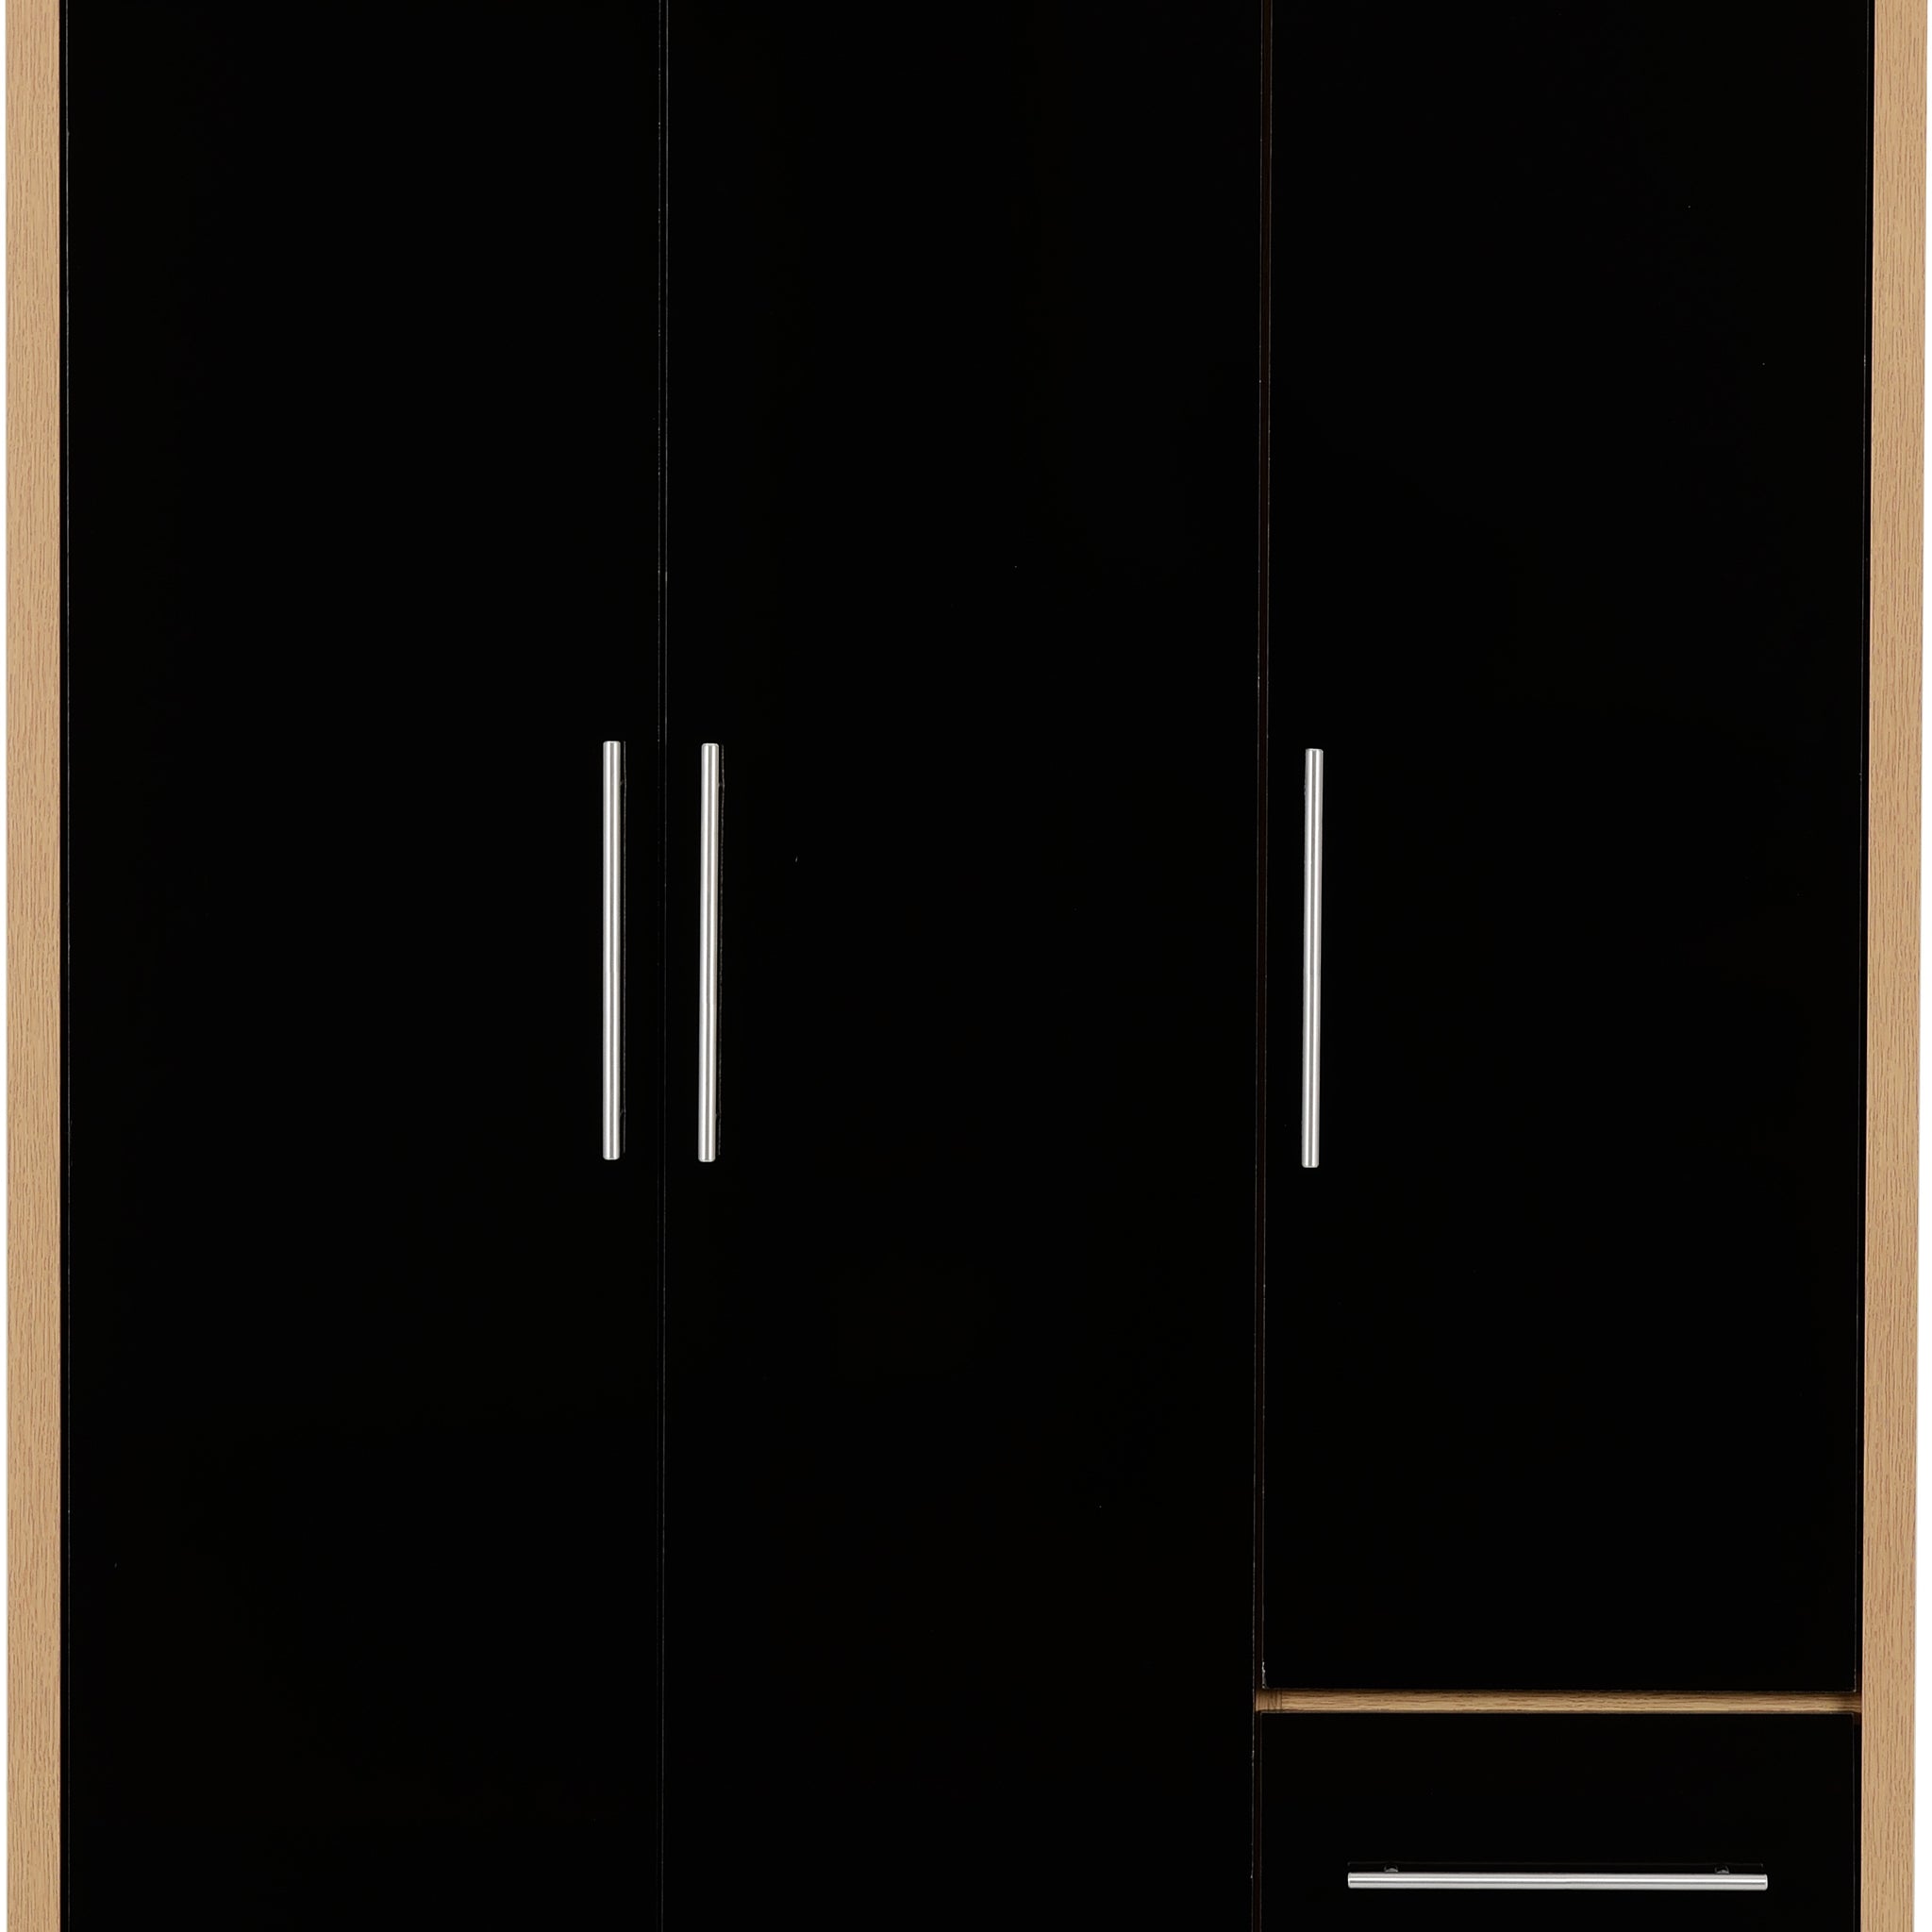 SEVILLE-3-DOOR-2-DRAWER-WARDROBE-BLACK-GLOSSLIGHT-OAK-EFFECT-VENEER-2019-01-100-101-067.jpgSeville 3 Door 2 Drawer Wardrobe - Black High Gloss/Light Oak Effect Veneer